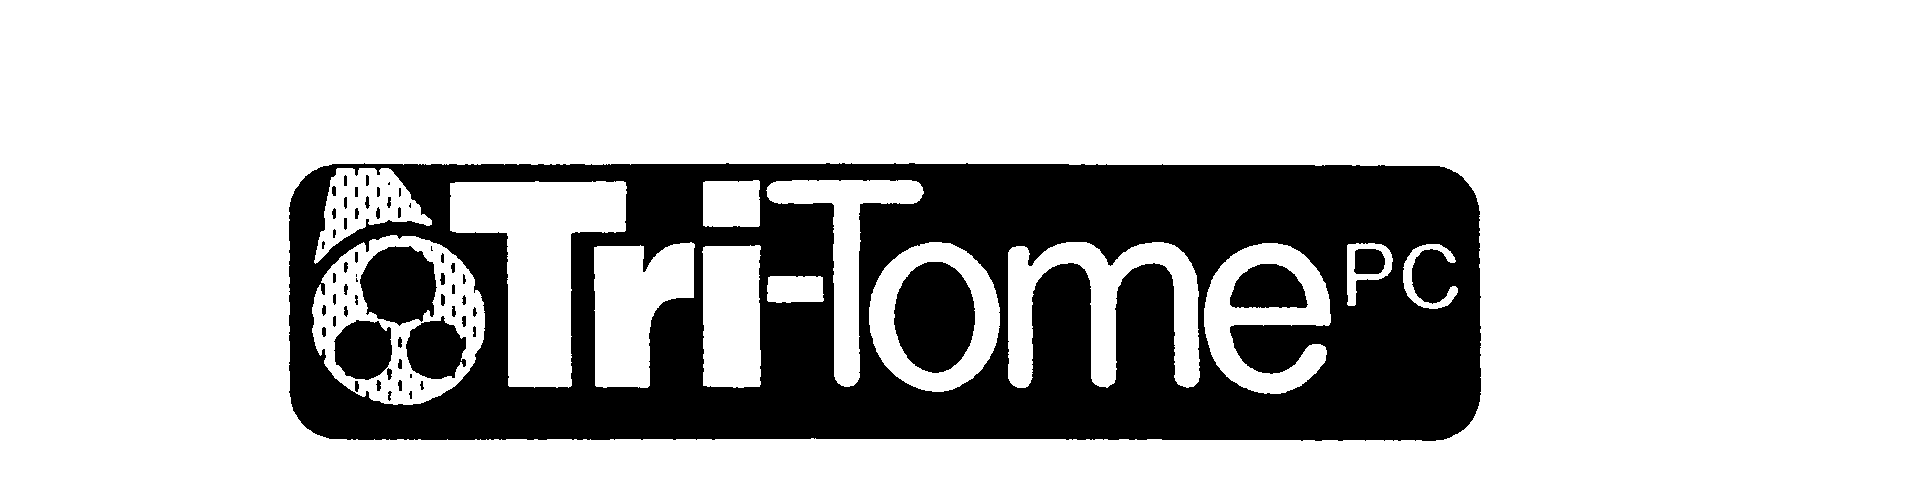 Trademark Logo TRI-TOME PC